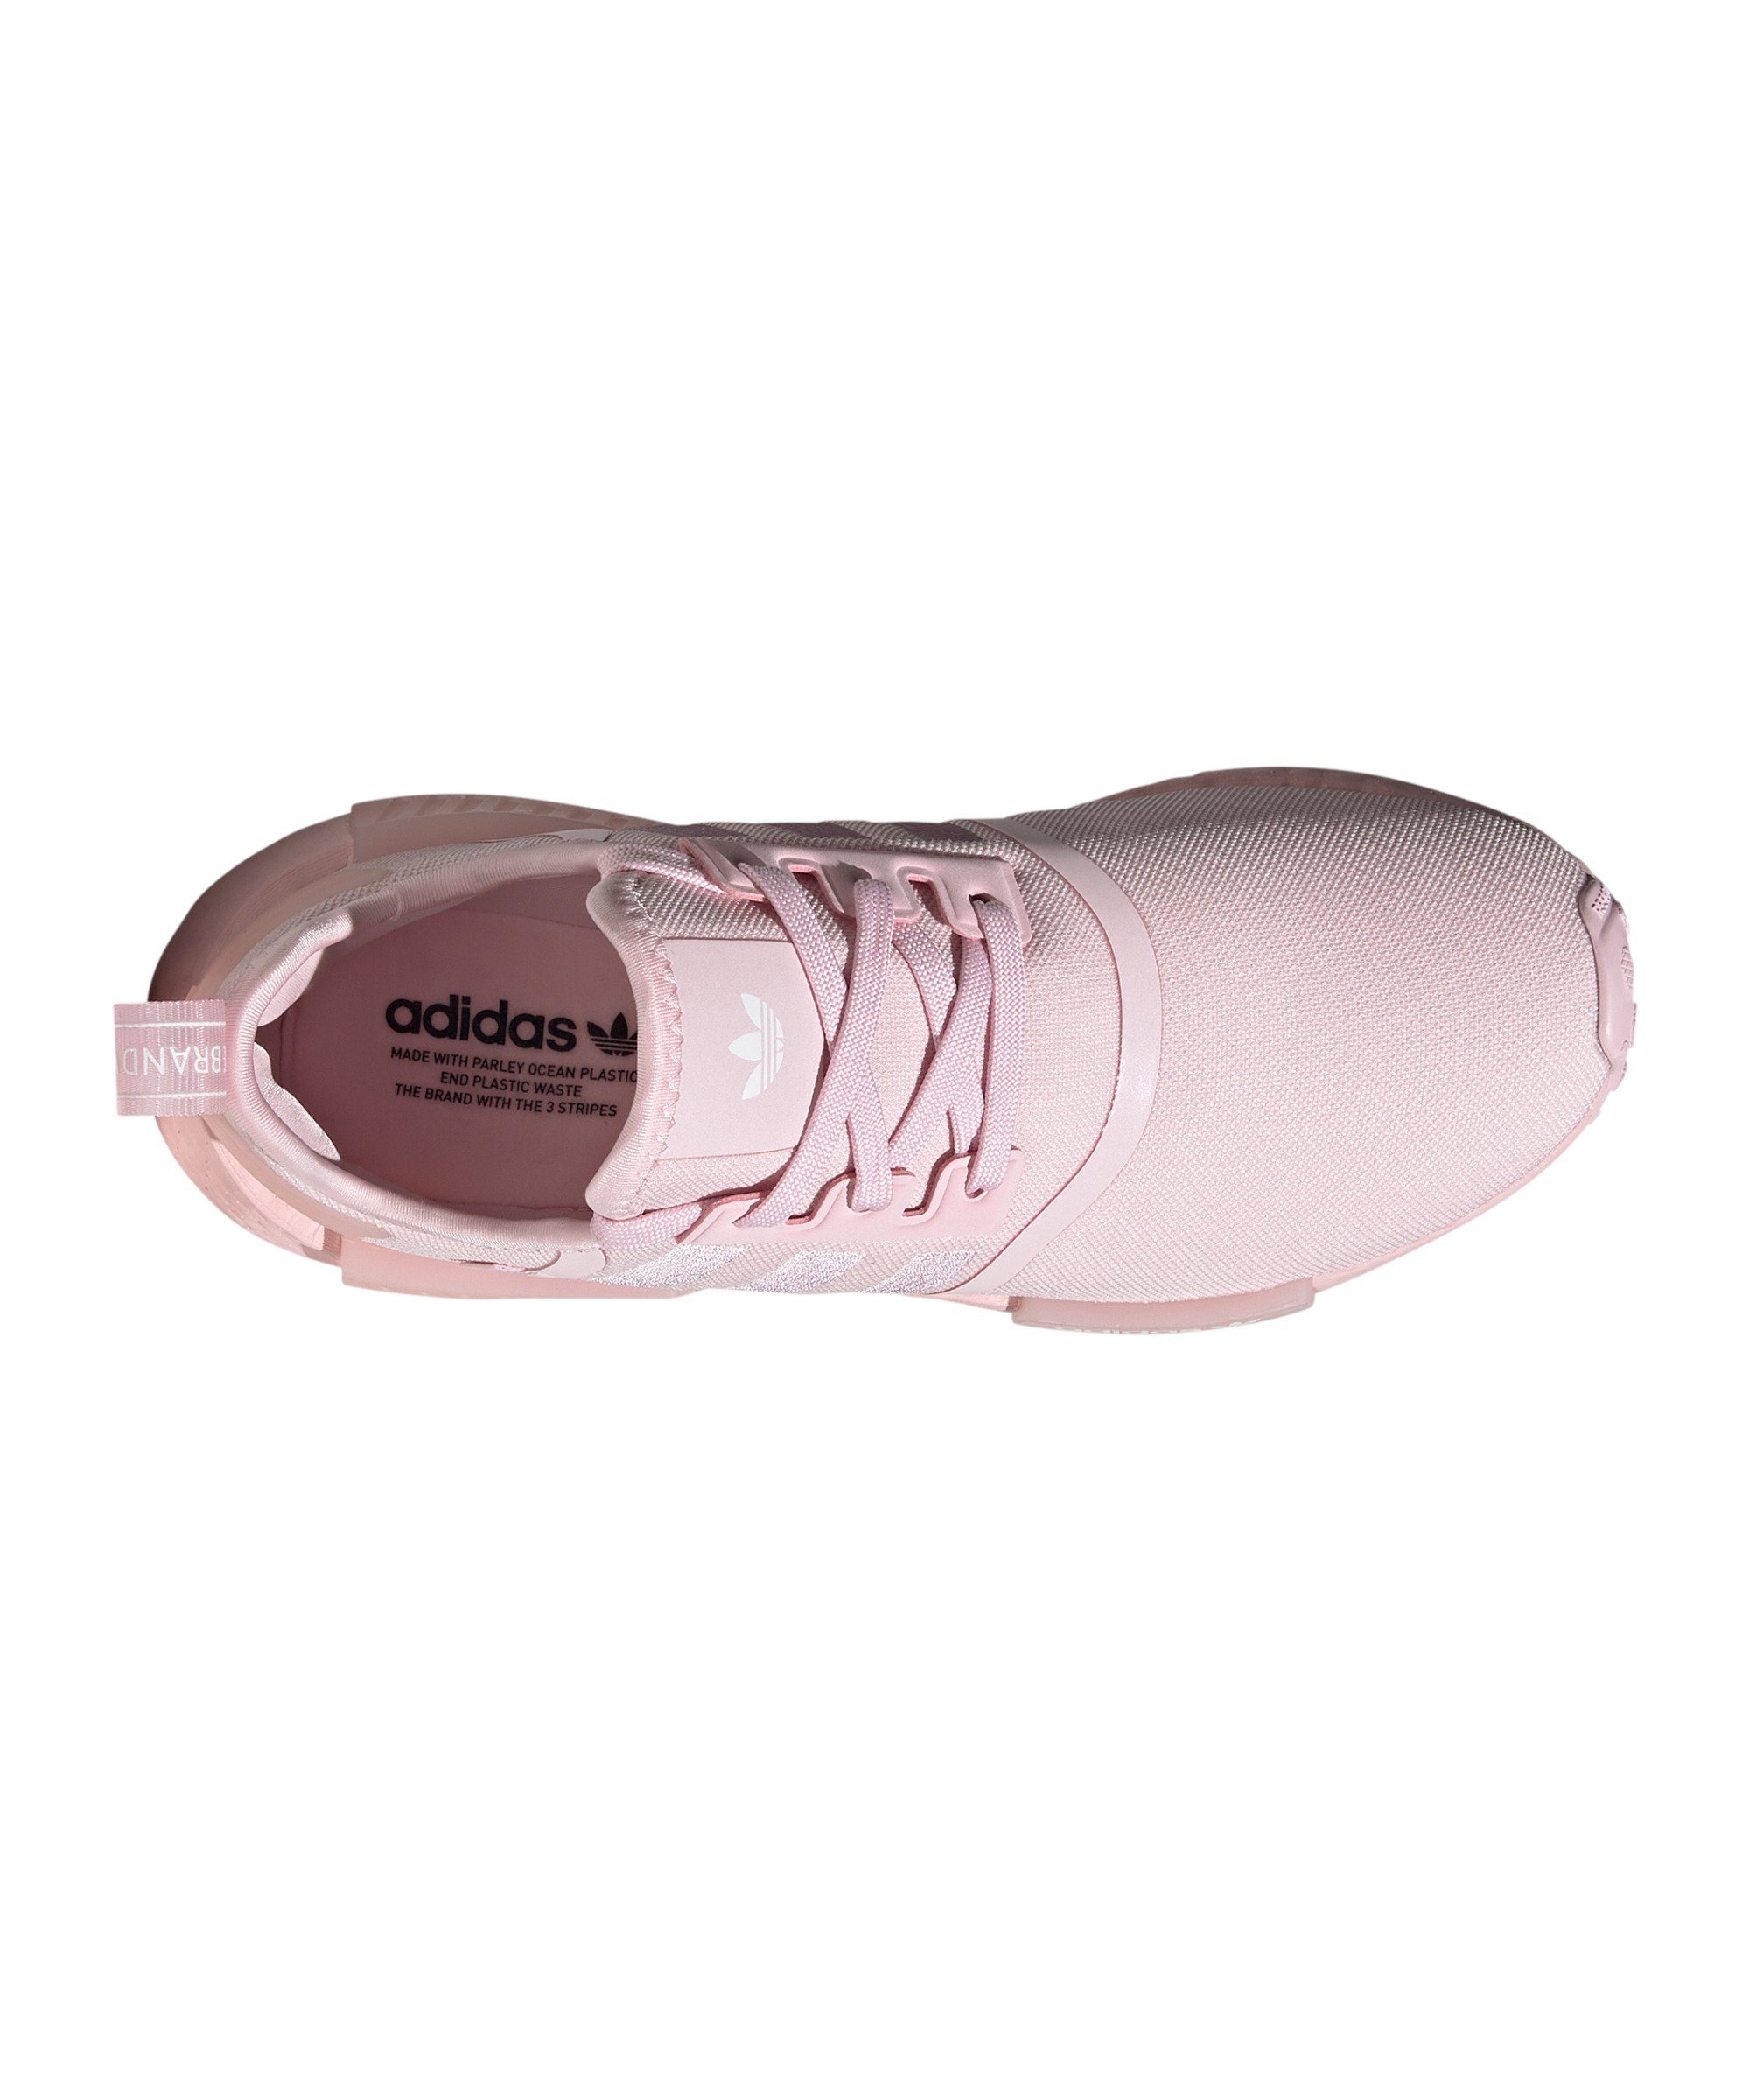 adidas pinkweiss NMD_R1 Originals Damen Sneaker